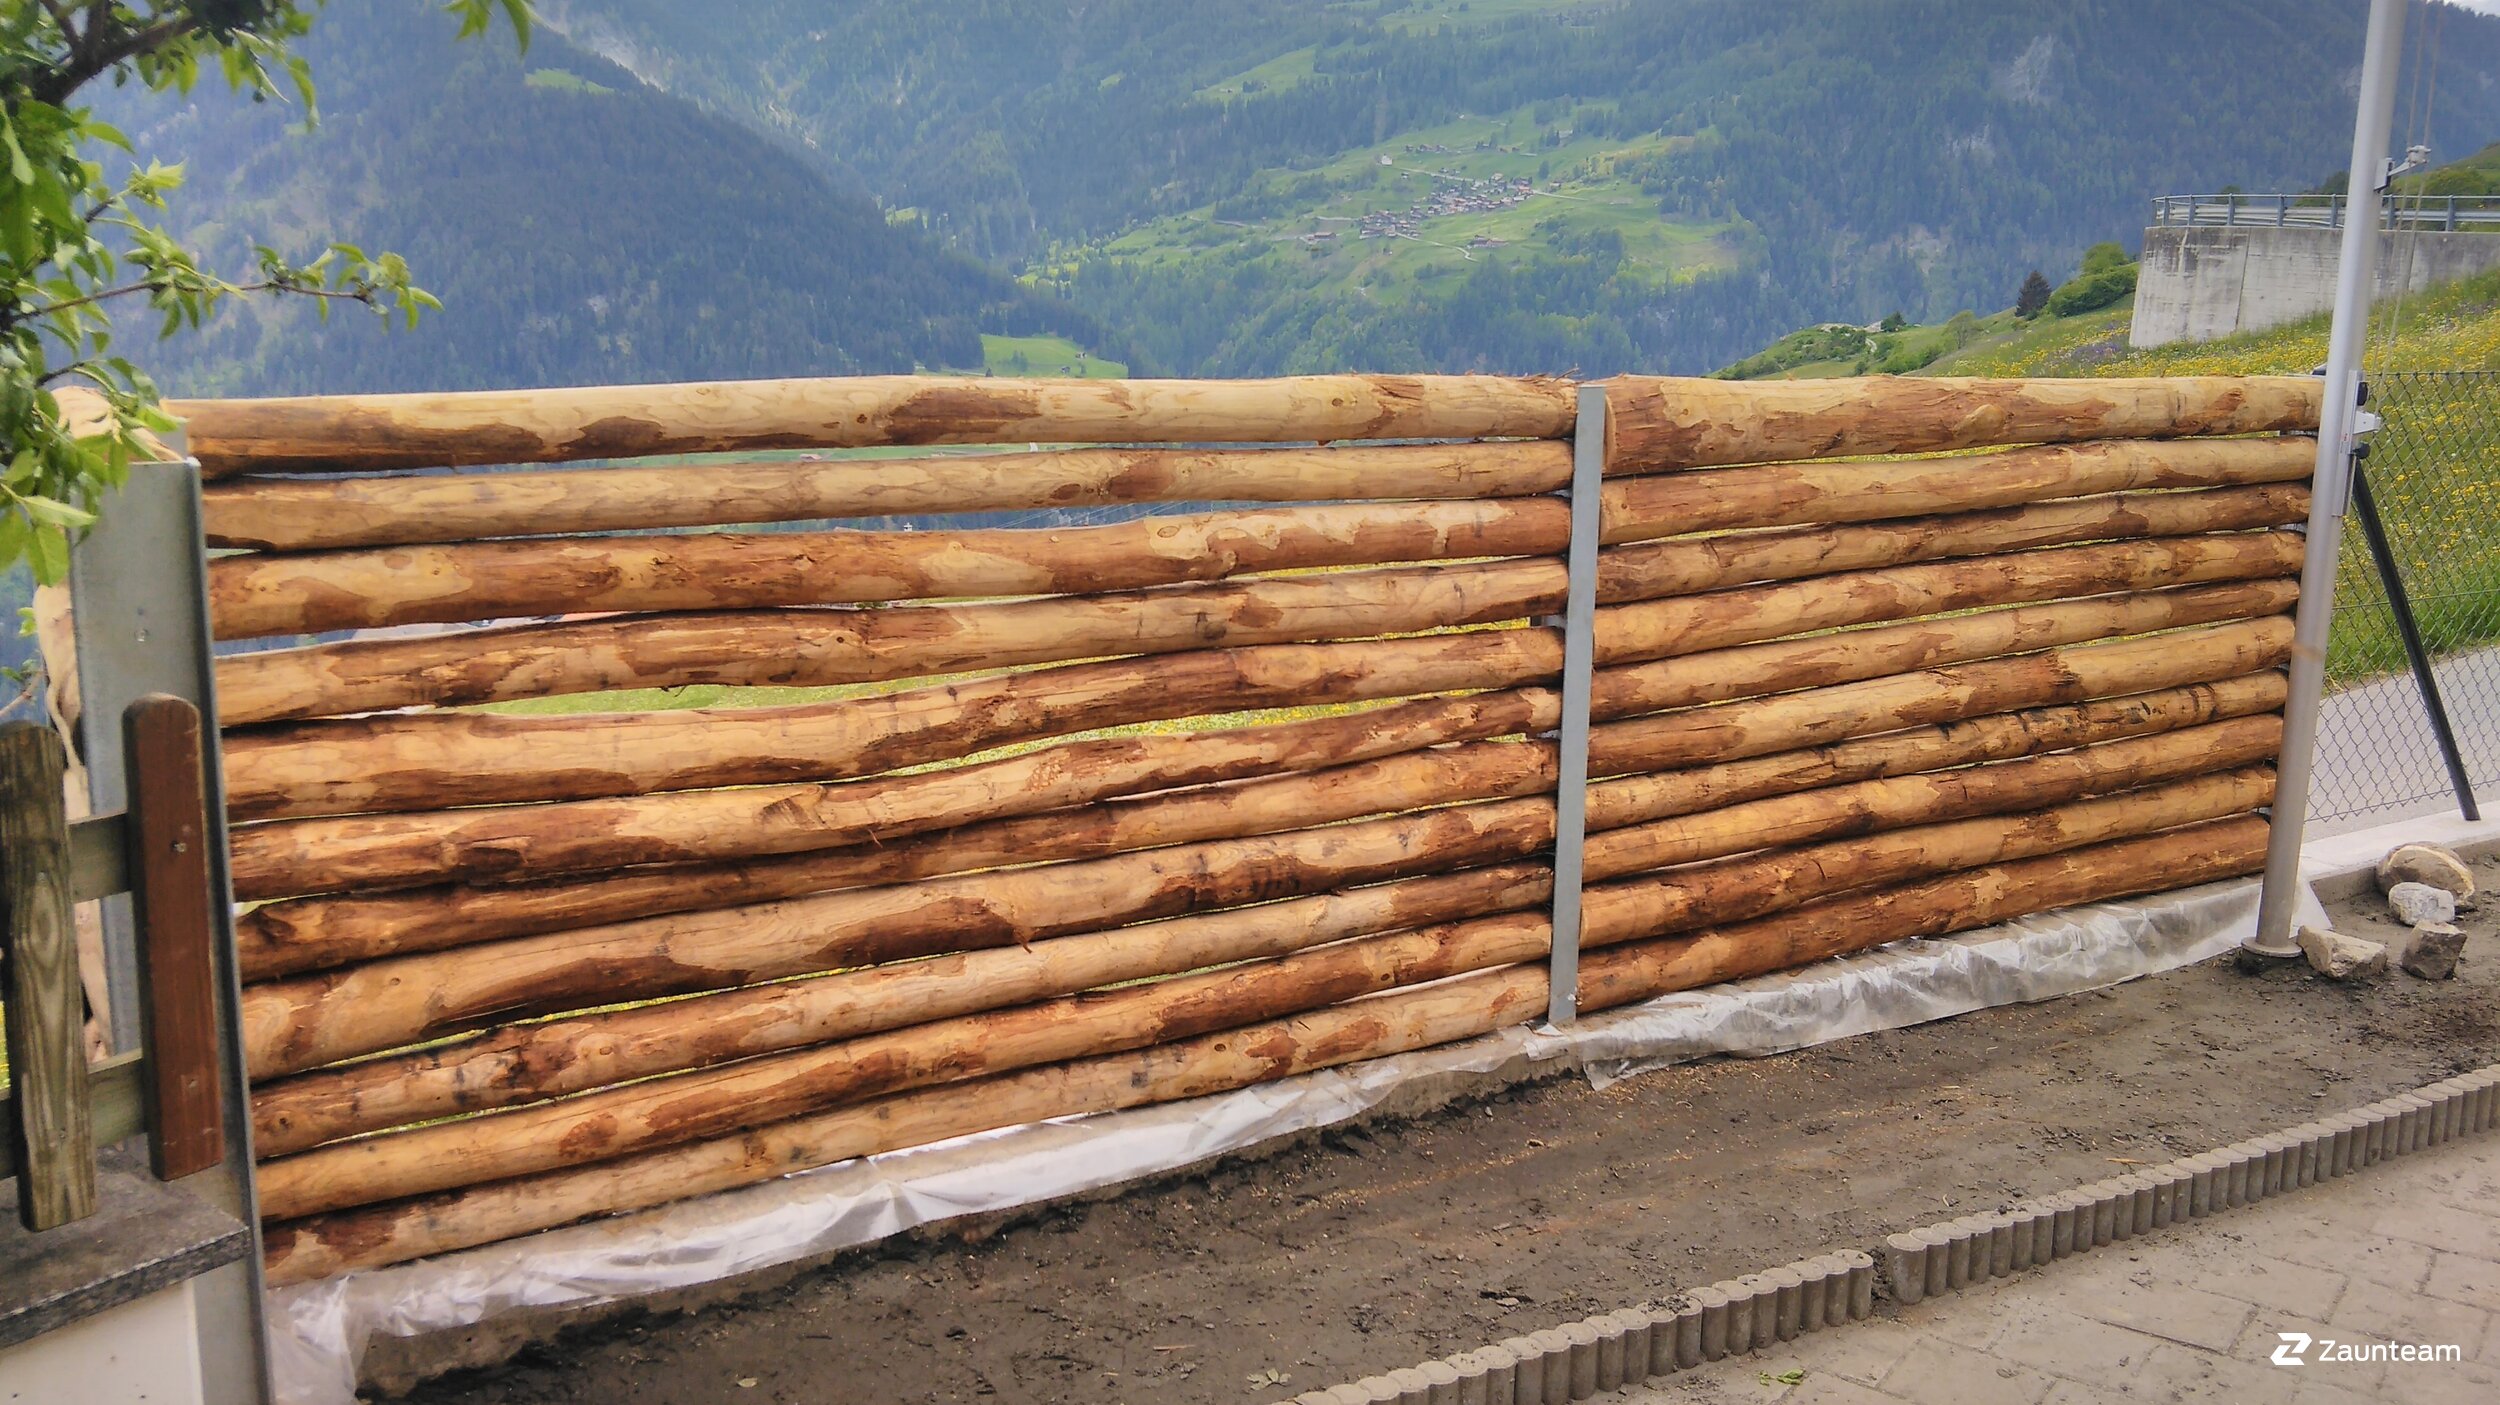 Protection brise-vue en bois de 2020 à 7082 Obervatz Suisse de Zaunteam Engadin.